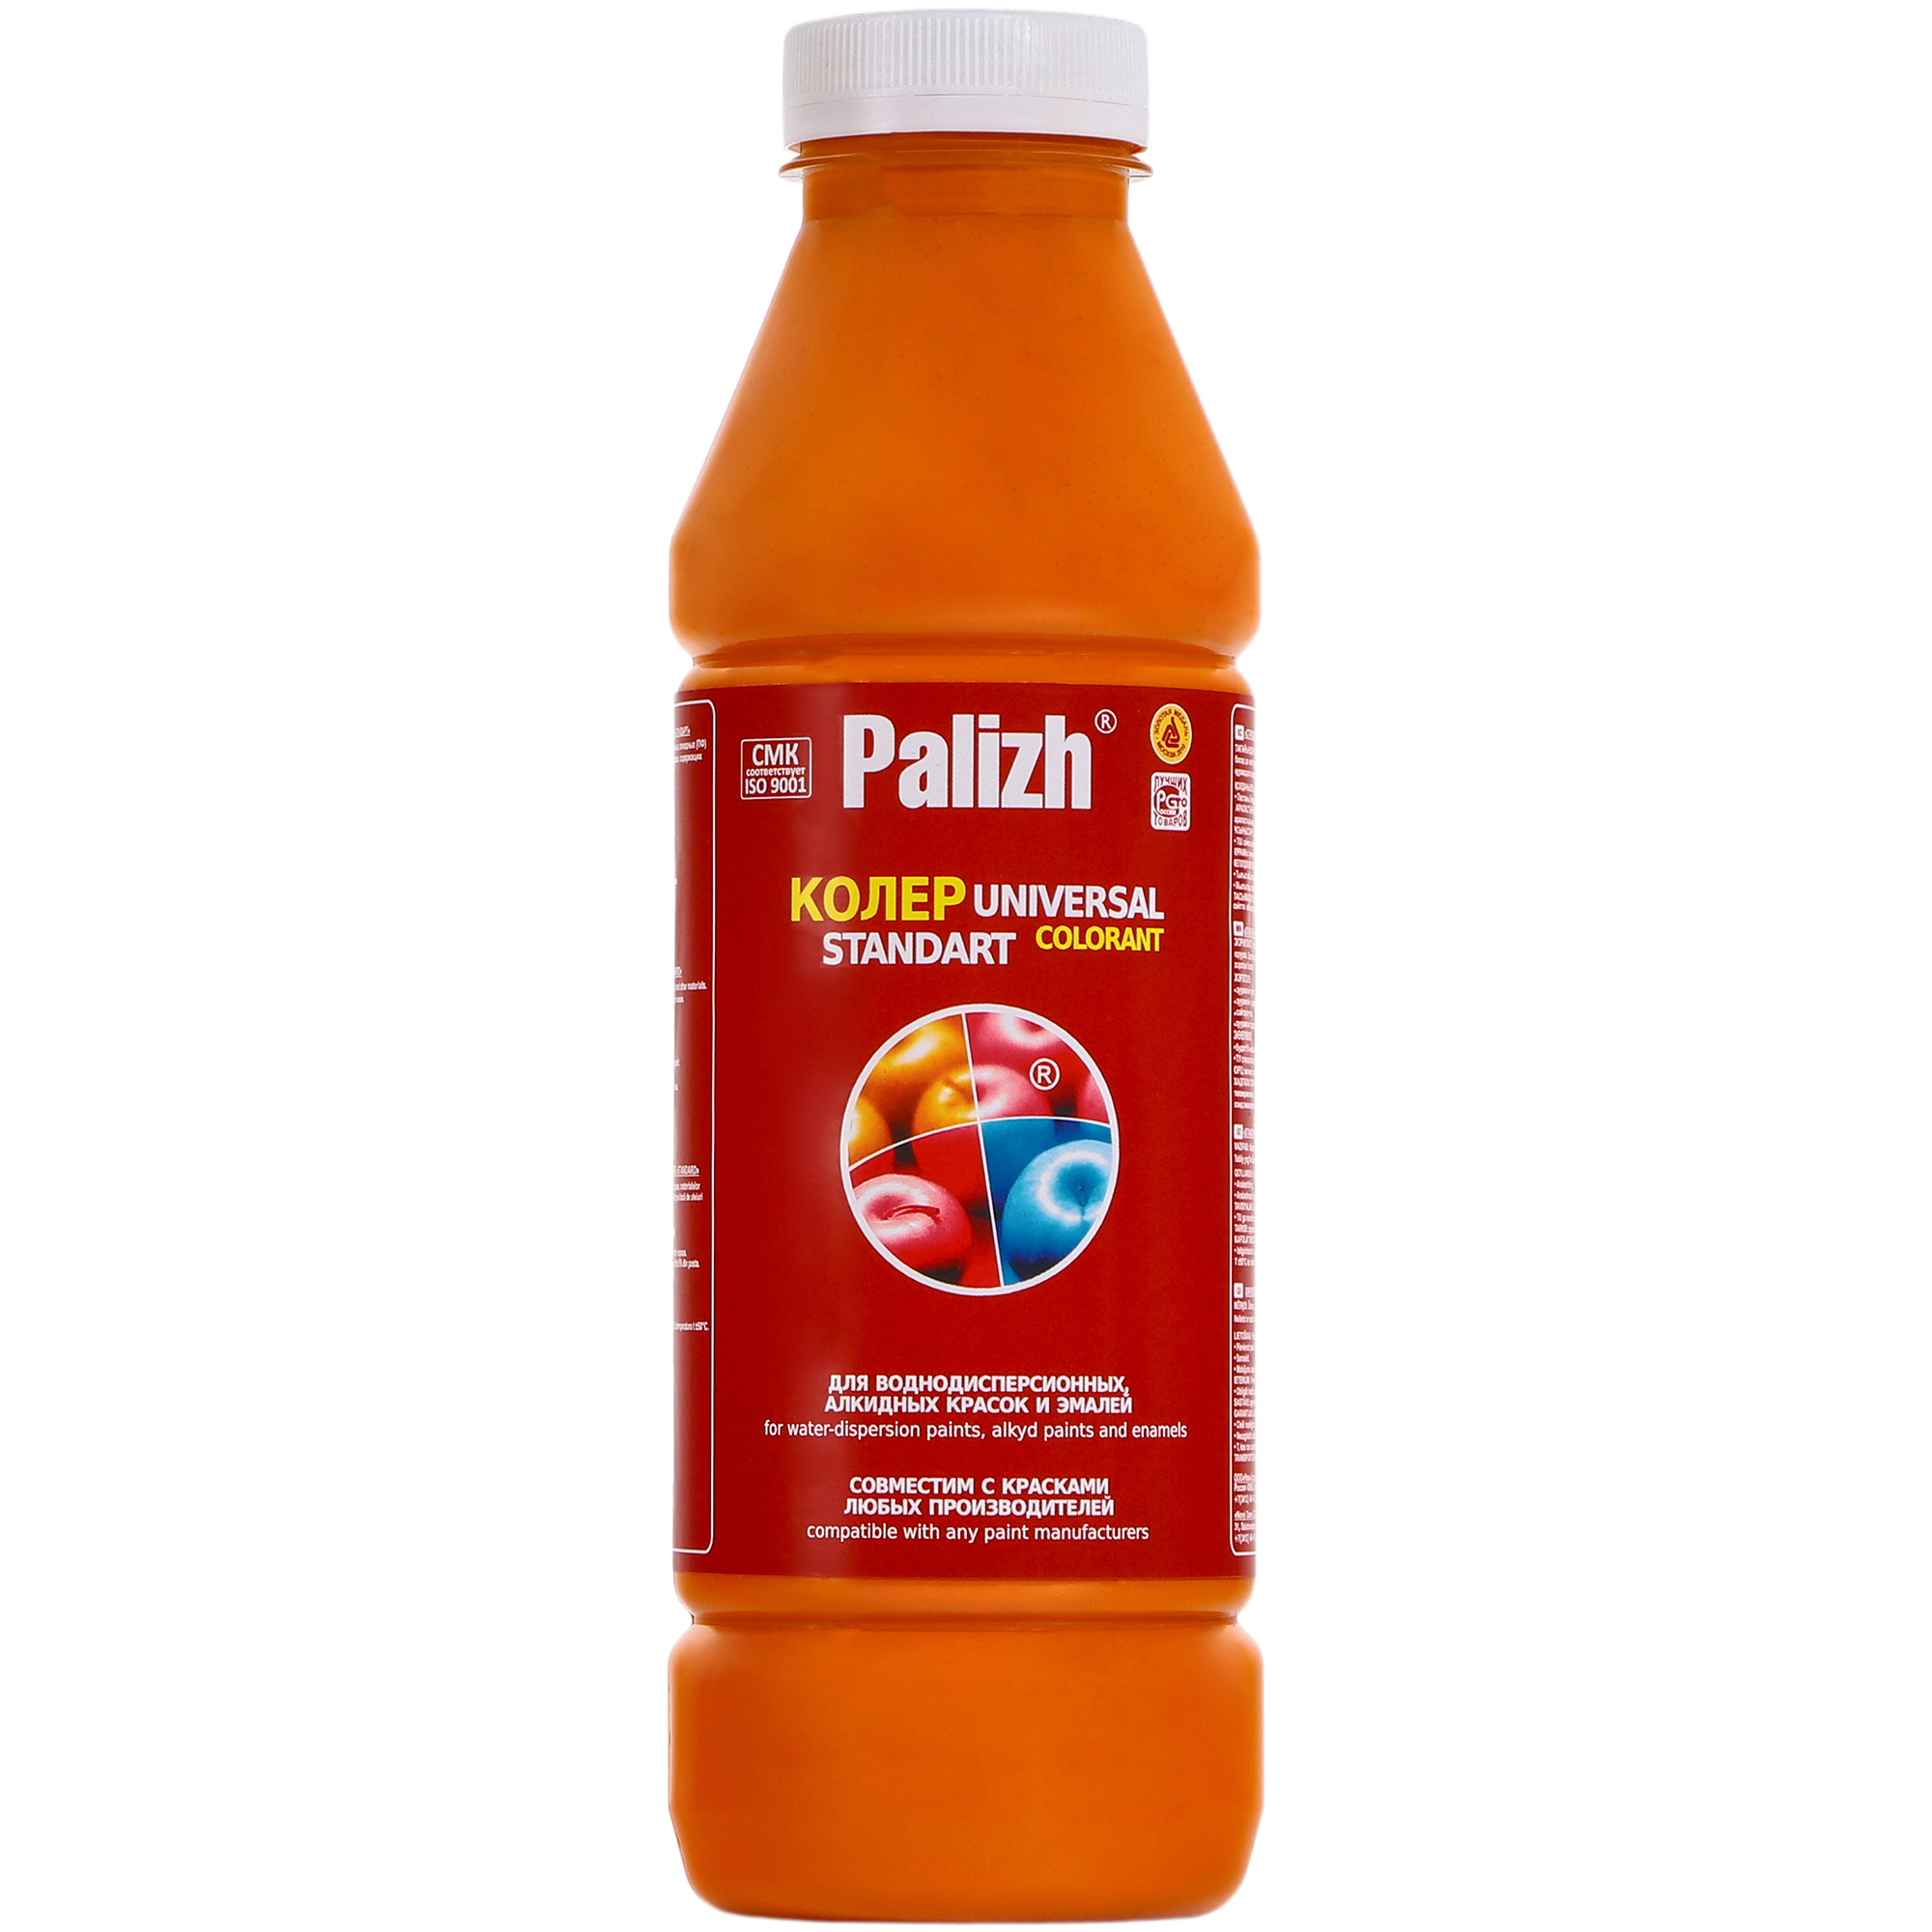 Паста универсальная колеровочная Palizh апельсин - 900 мл паста универсальная колеровочная palizh оранжевый 900 мл